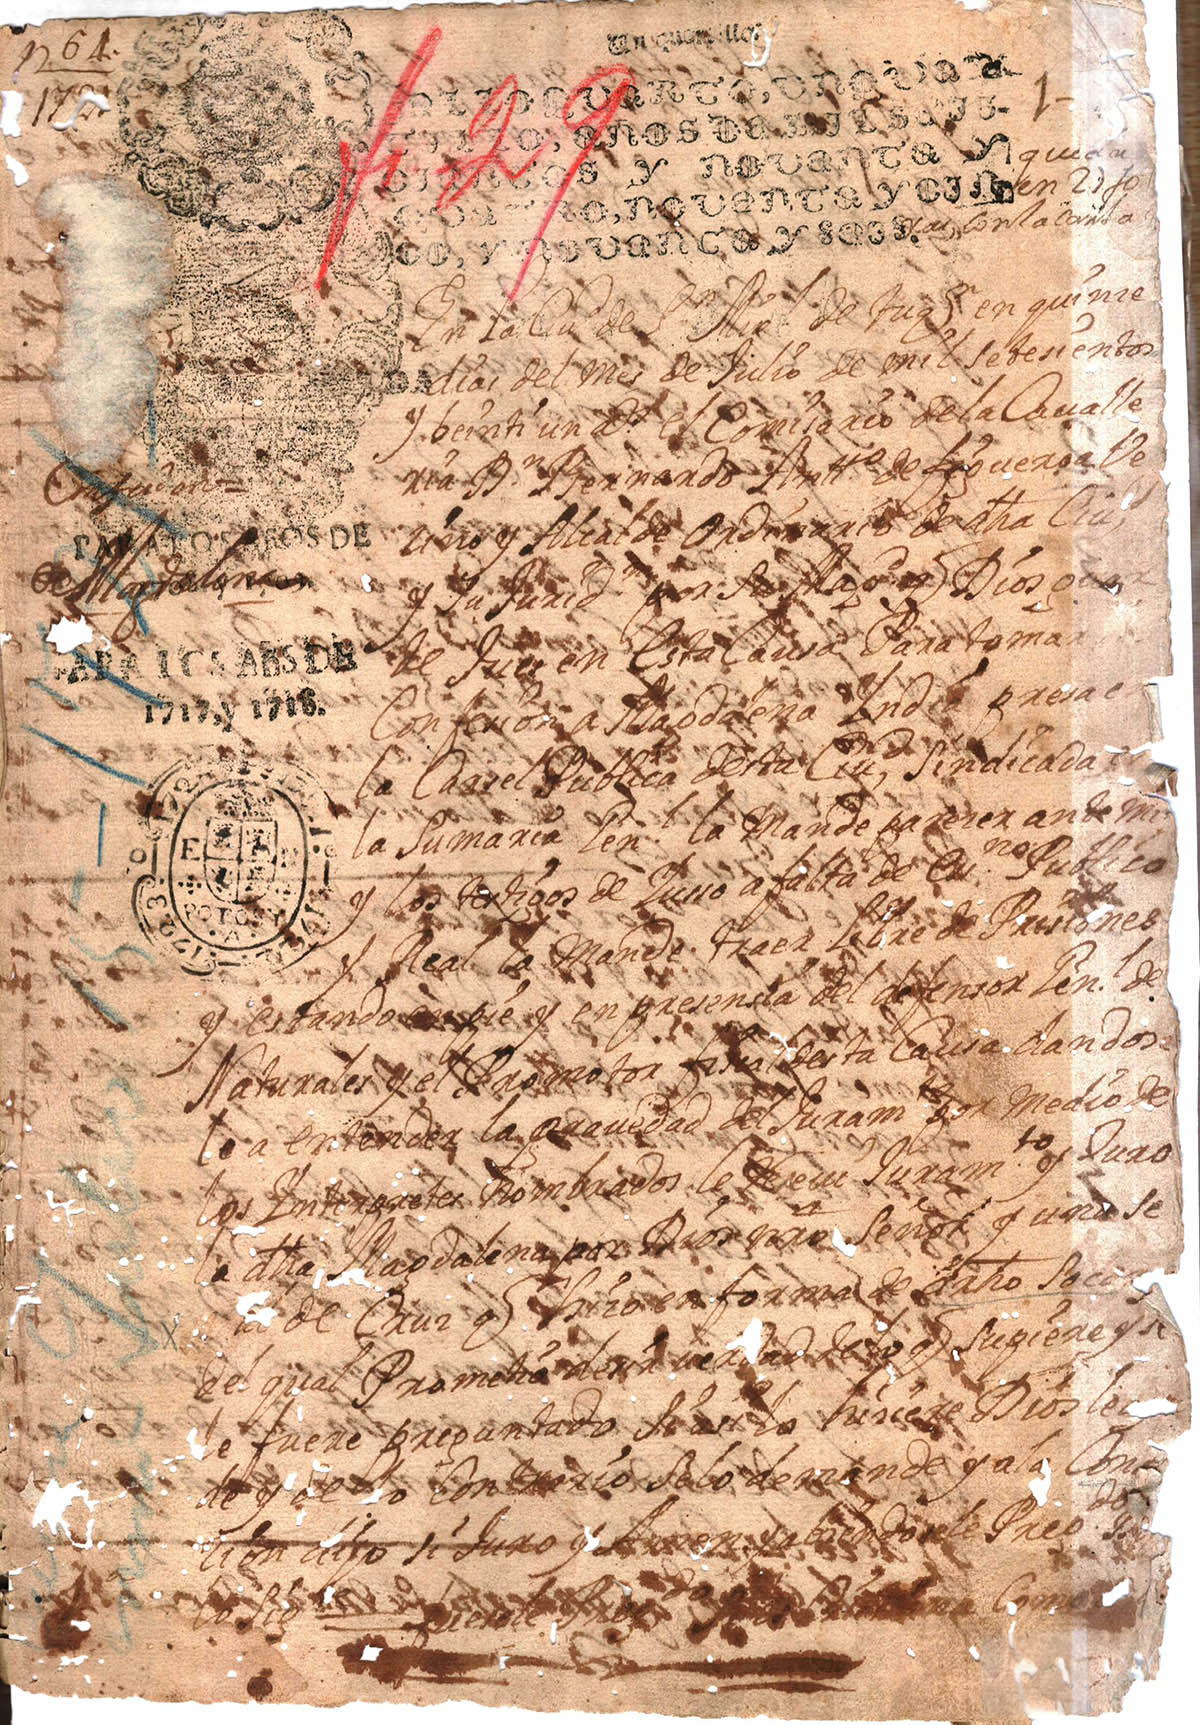 Caja 2 Exp. 1 Año 1721 f 27V